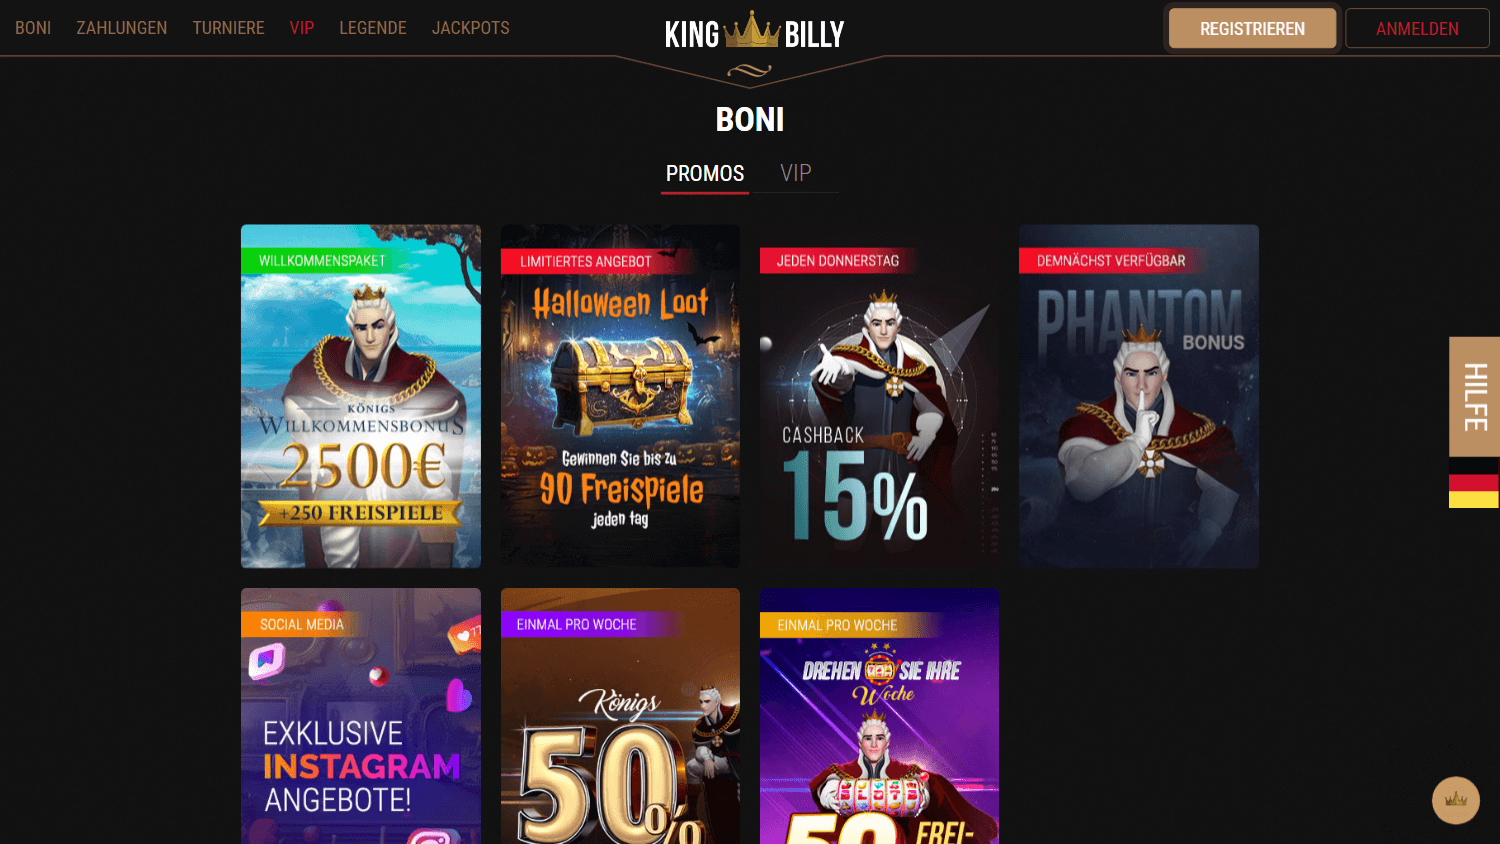 king_billy_casino_(malta)_promotions_desktop